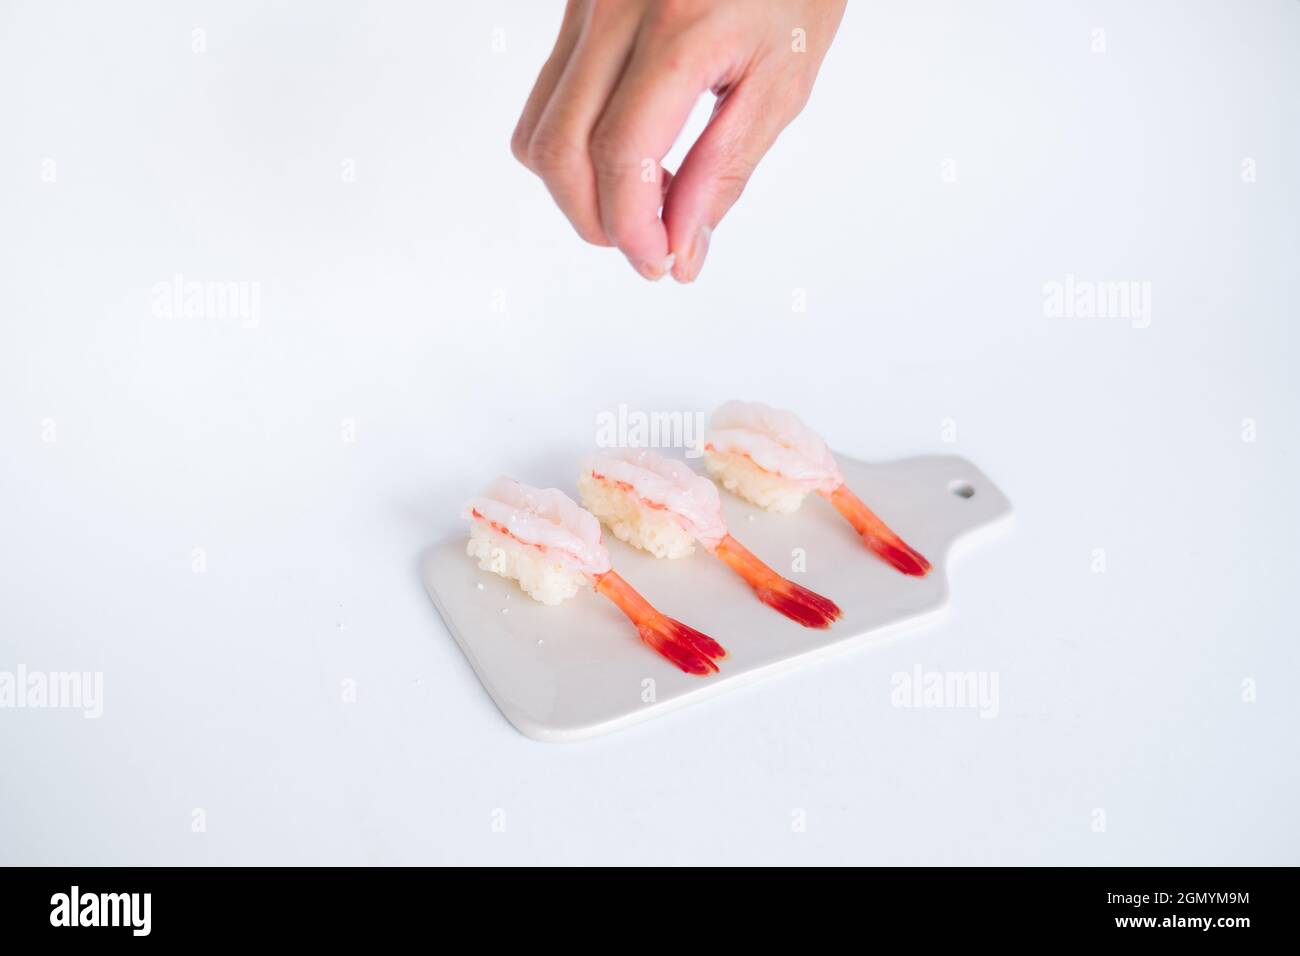 Rohes Shrimp-Garnelen-Sushi im japanischen Restaurant. Sushi - ama Ebi Nigiri auf weißem Brett auf weißem Hintergrund. Der Koch gießt Salz. Hochwertige Fotos Stockfoto